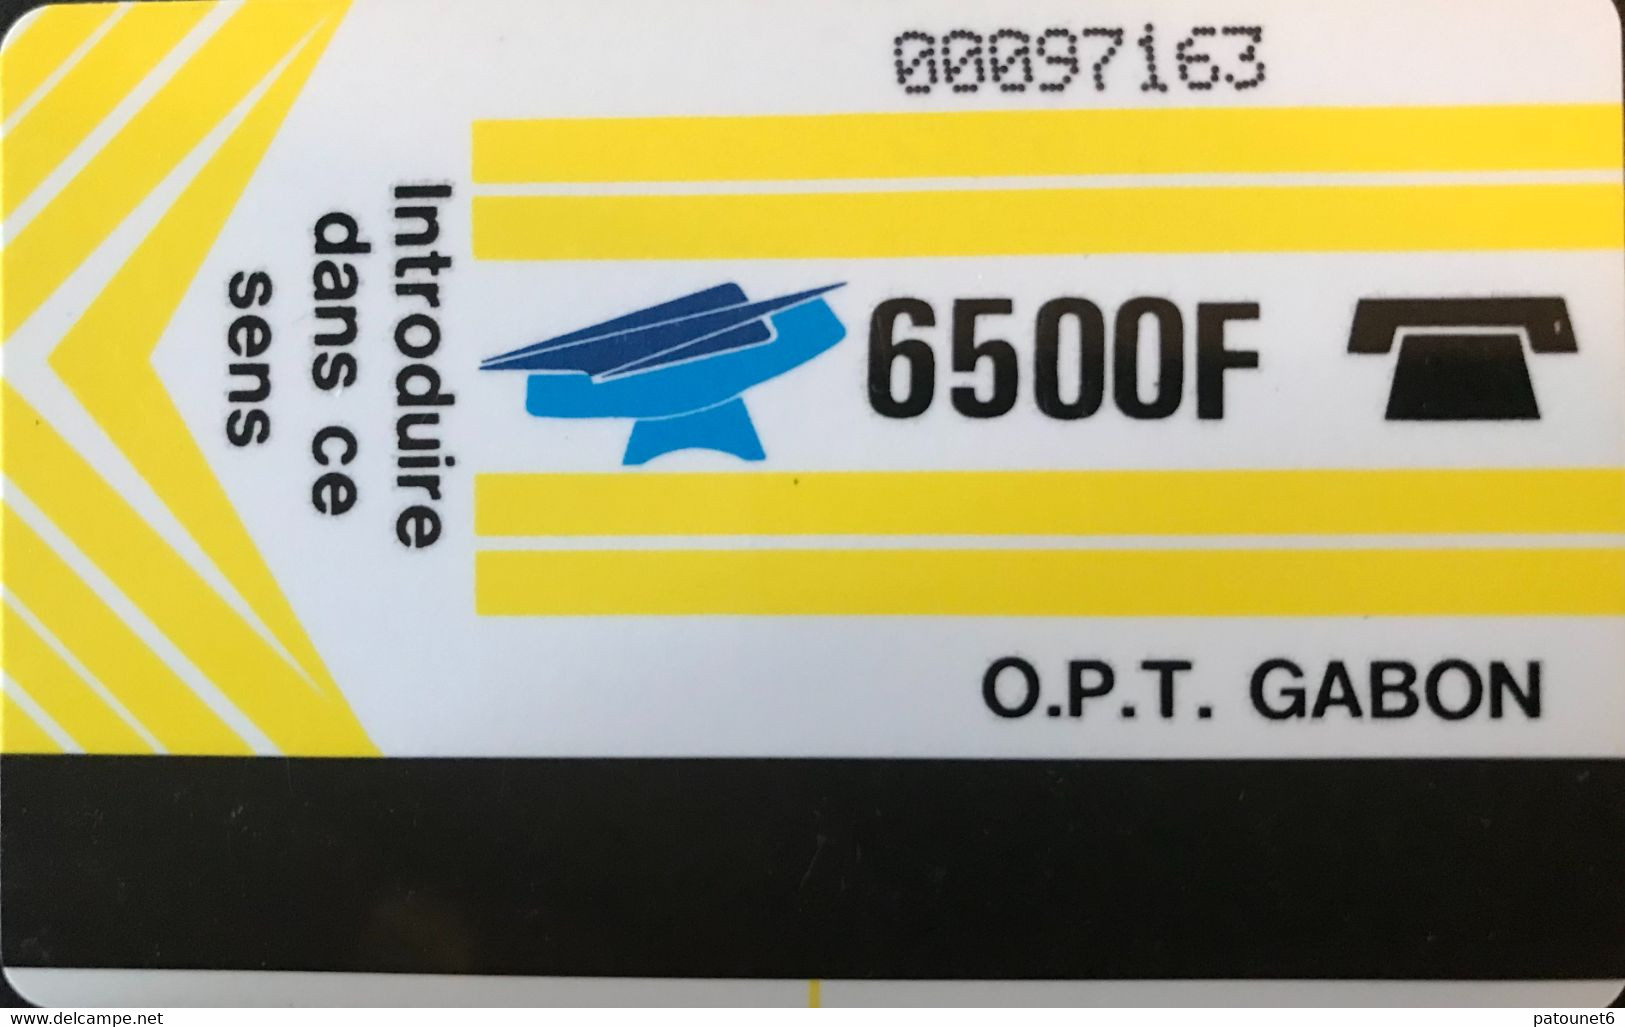 GABON  -  Phonecard  -  Magnétique  -  OPT GABON  - Jaune -  6500 F  -  Control Number (O Barré - Petits Chiffres) - Gabon